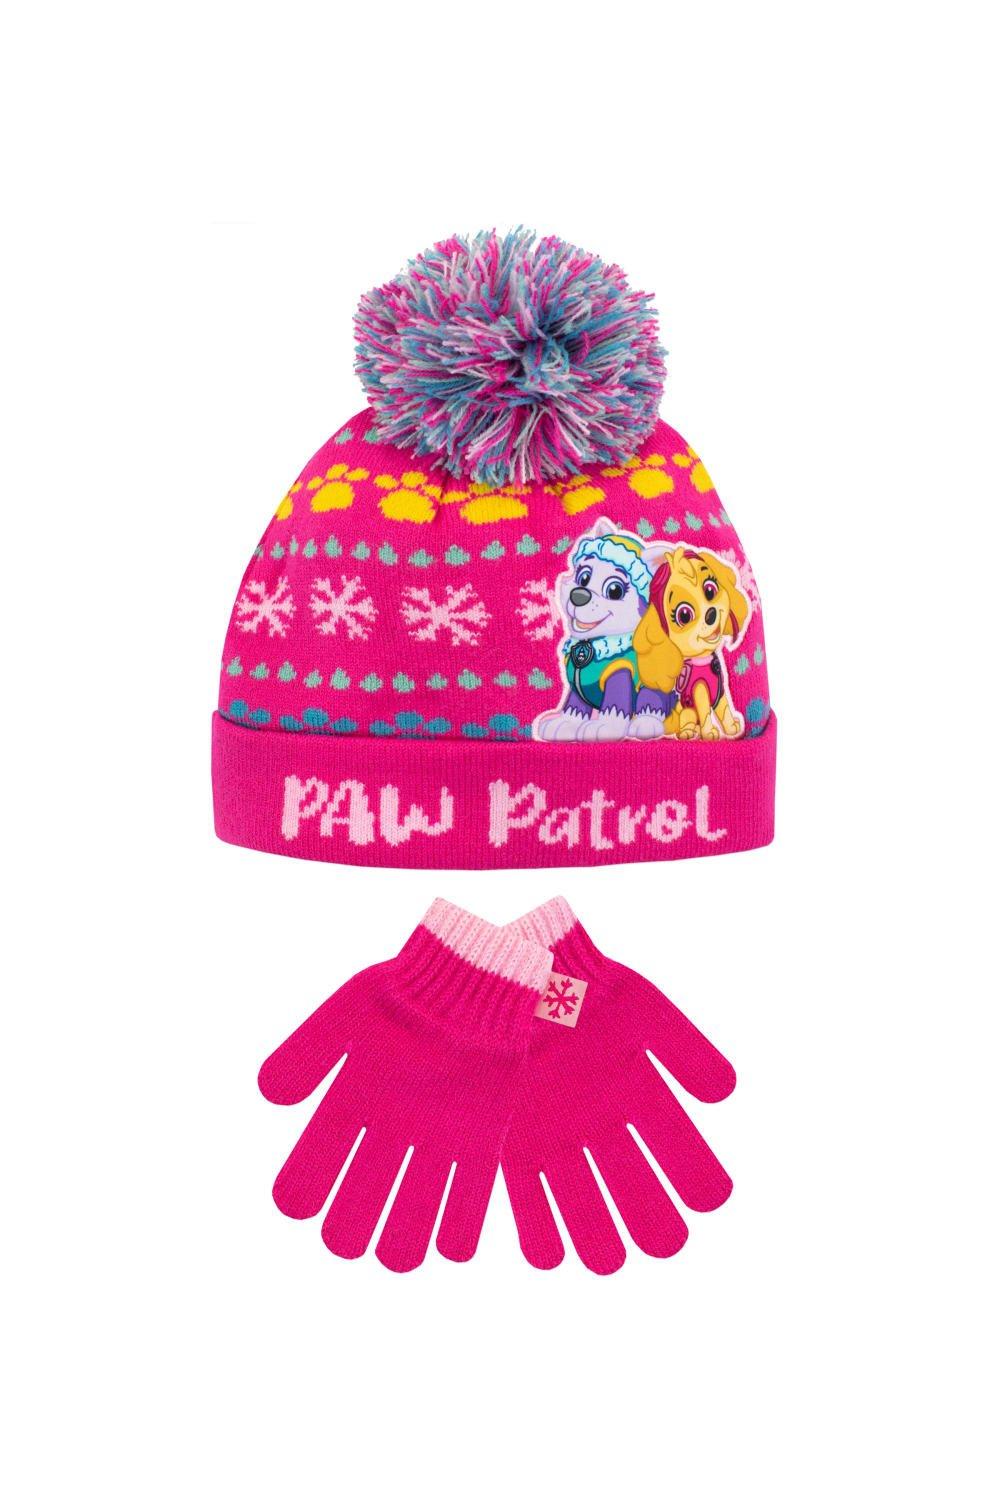 Детский комплект шапки и перчаток Paw Patrol, розовый разноцветная плюшевая шапка унисекс для взрослых праздничная рождественская шапка шапка с помпоном для рождественской вечеринки